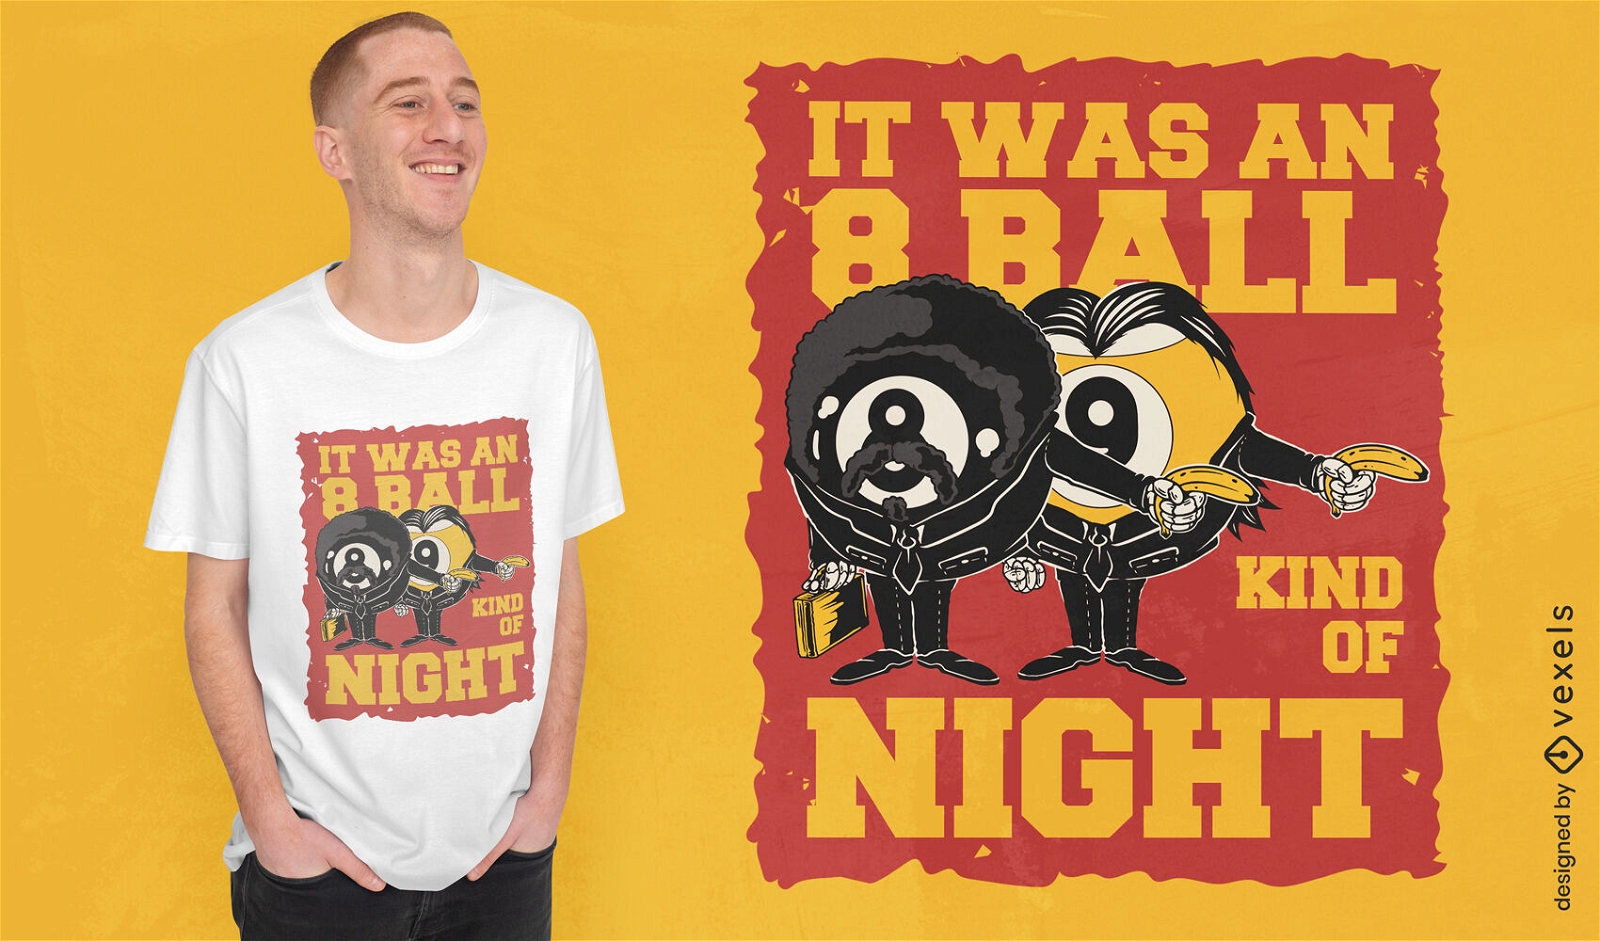 Magisches 8-Ball-Parodie-T-Shirt-Design